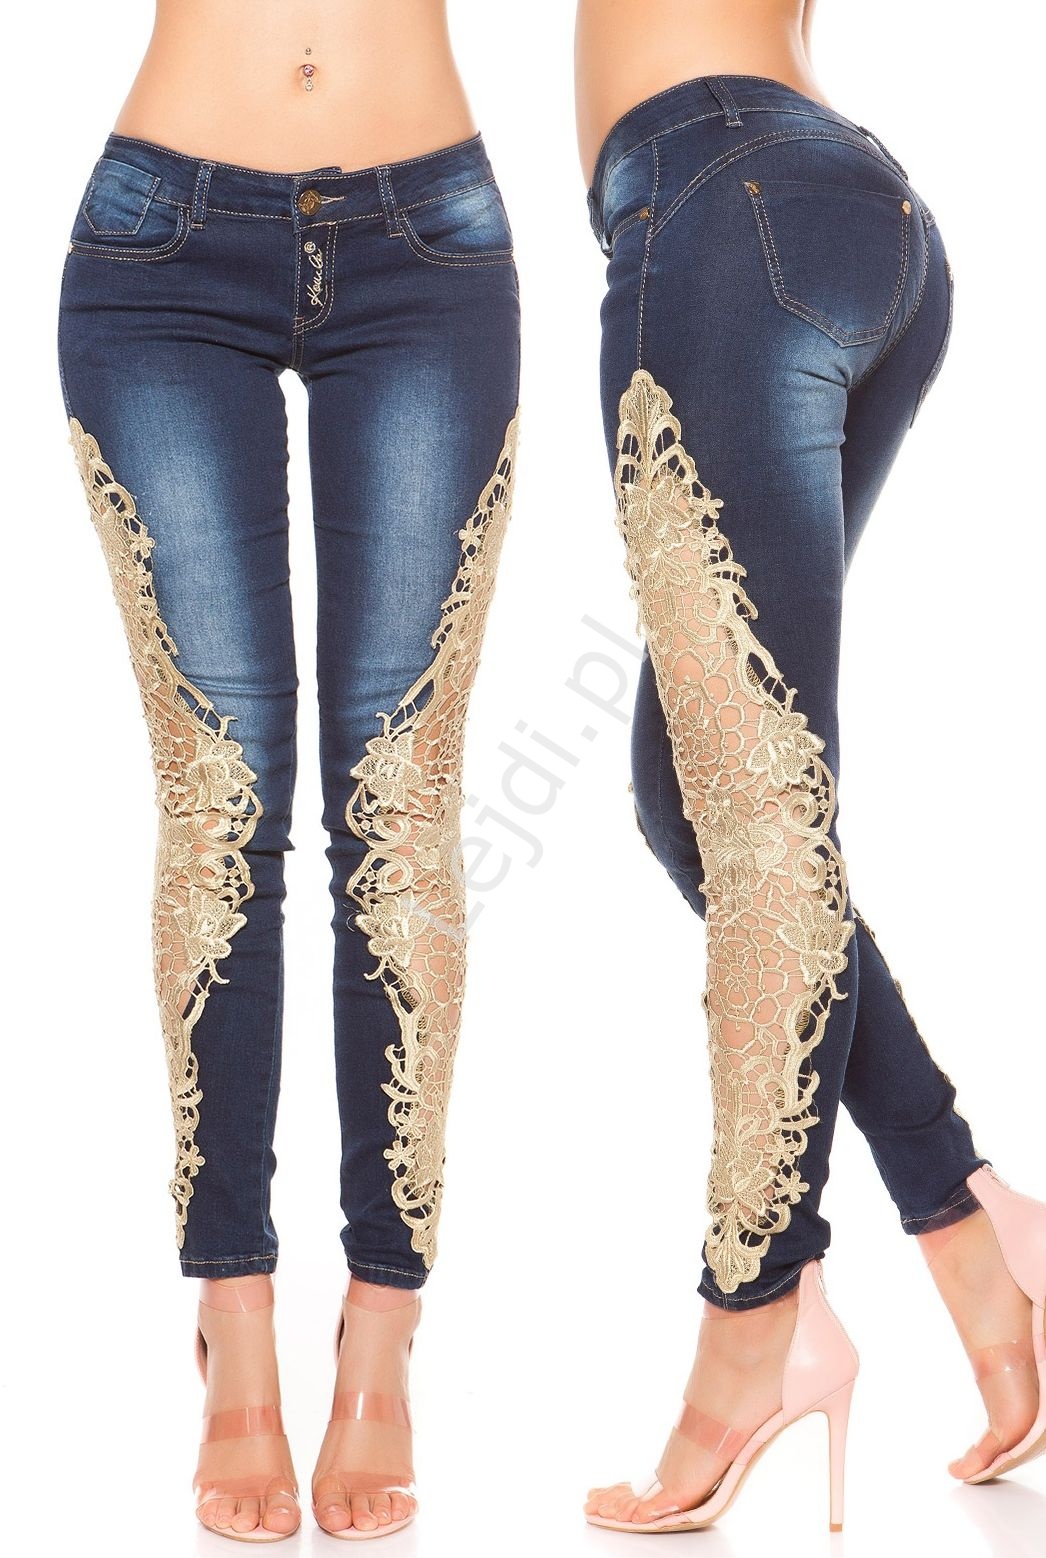 Jeansy modelujące sylwetkę ze złotą gipiurową koronką, biodrówki, wyszczuplające - Lejdi